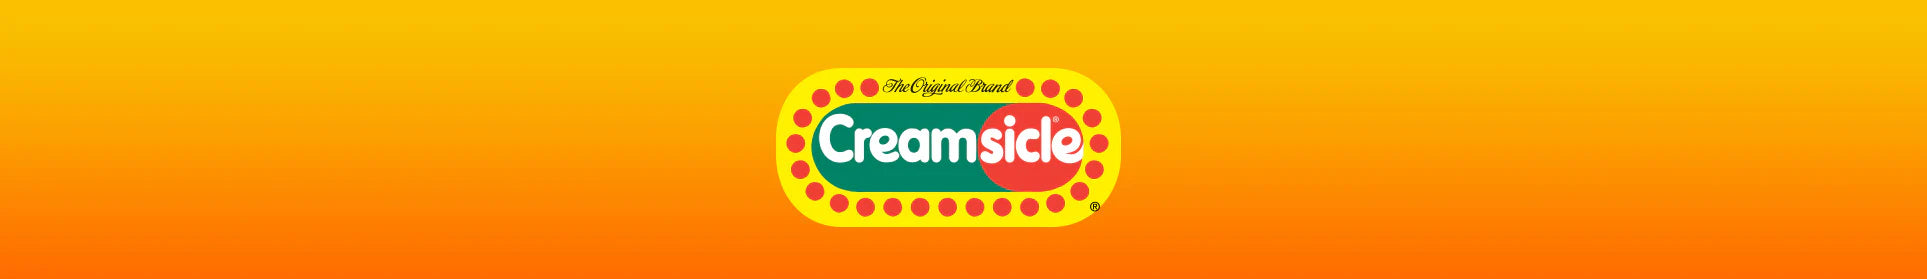 Creamsicle Banner